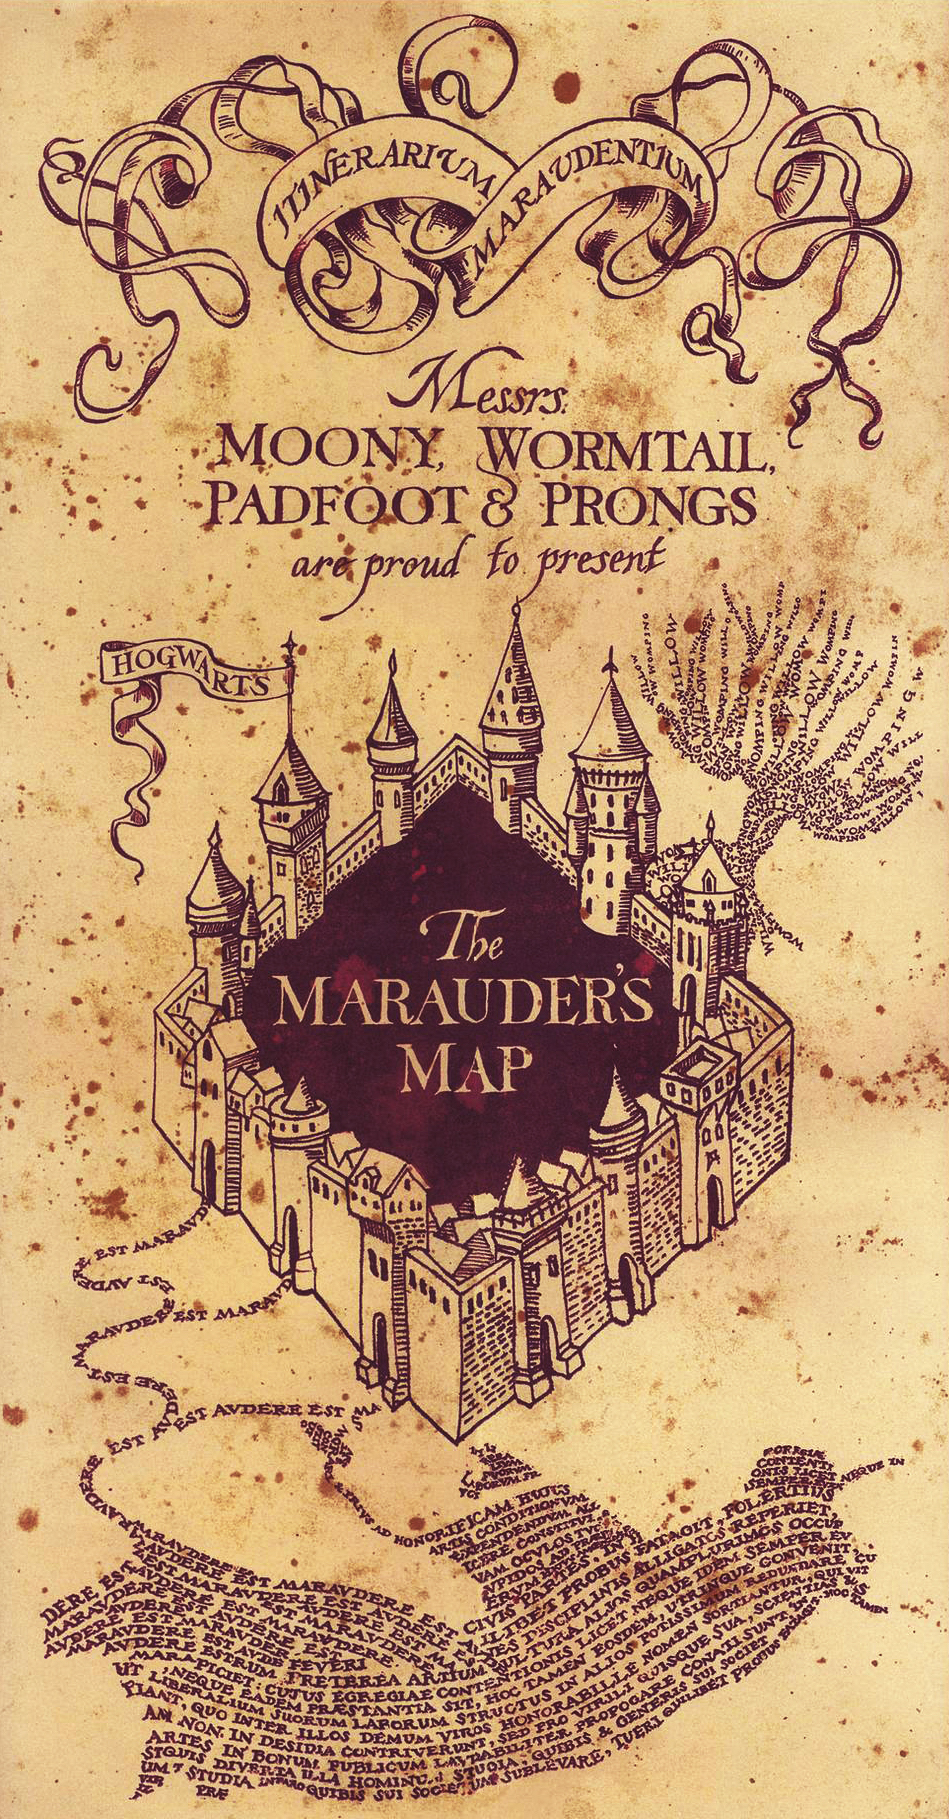 The Marauder's Map – Samuel Thomas